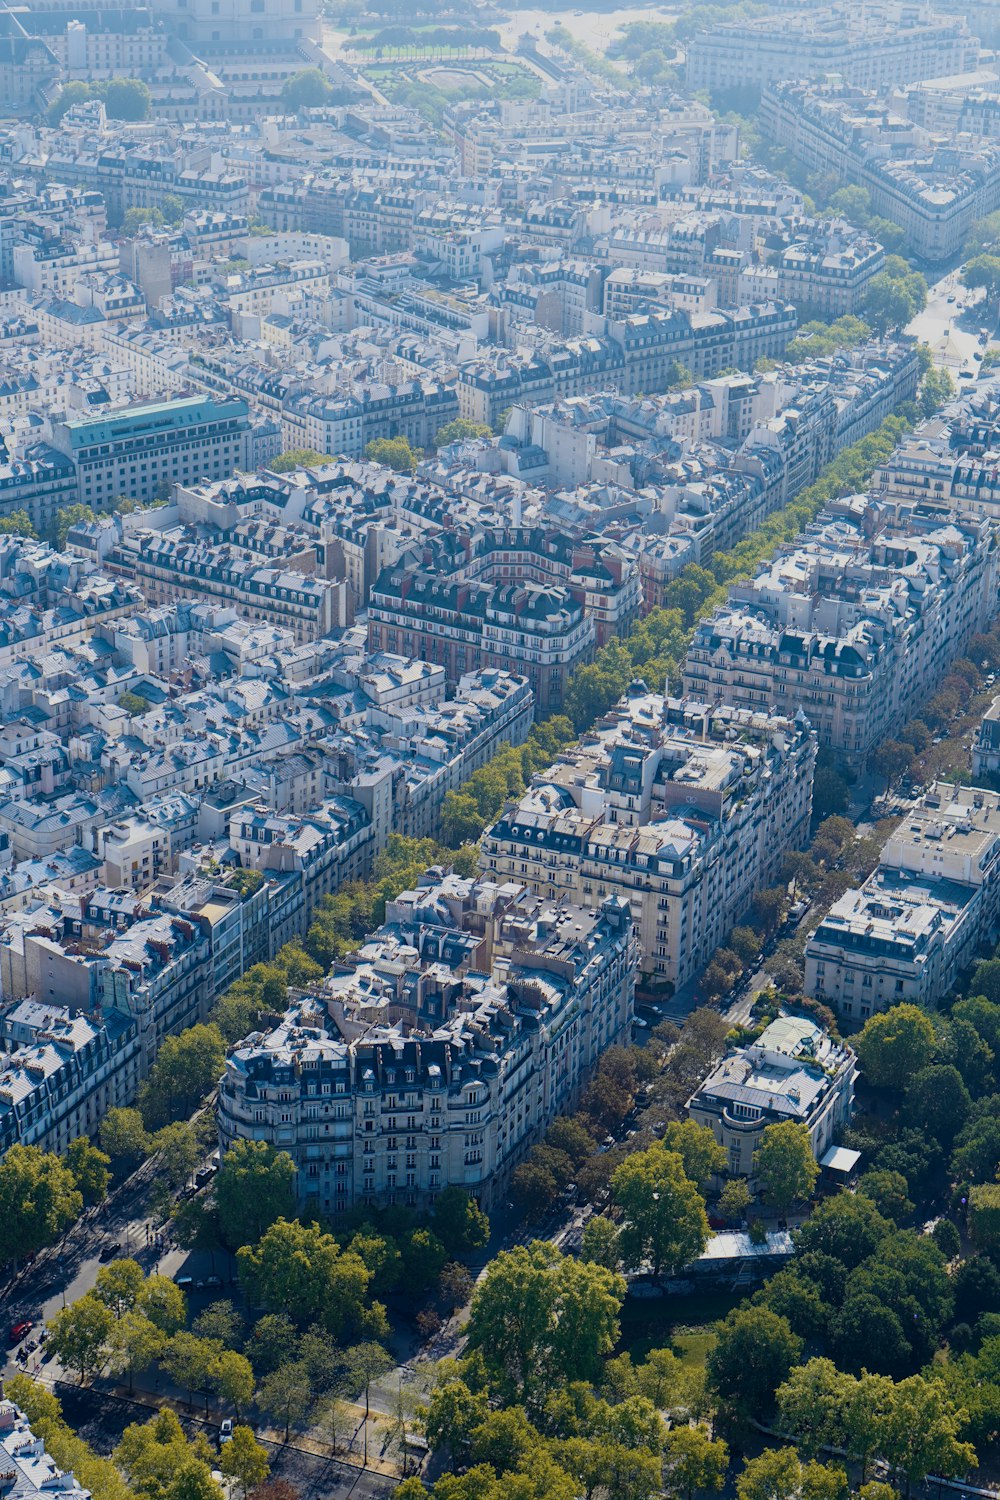 Una vista aérea de una ciudad con muchos edificios altos